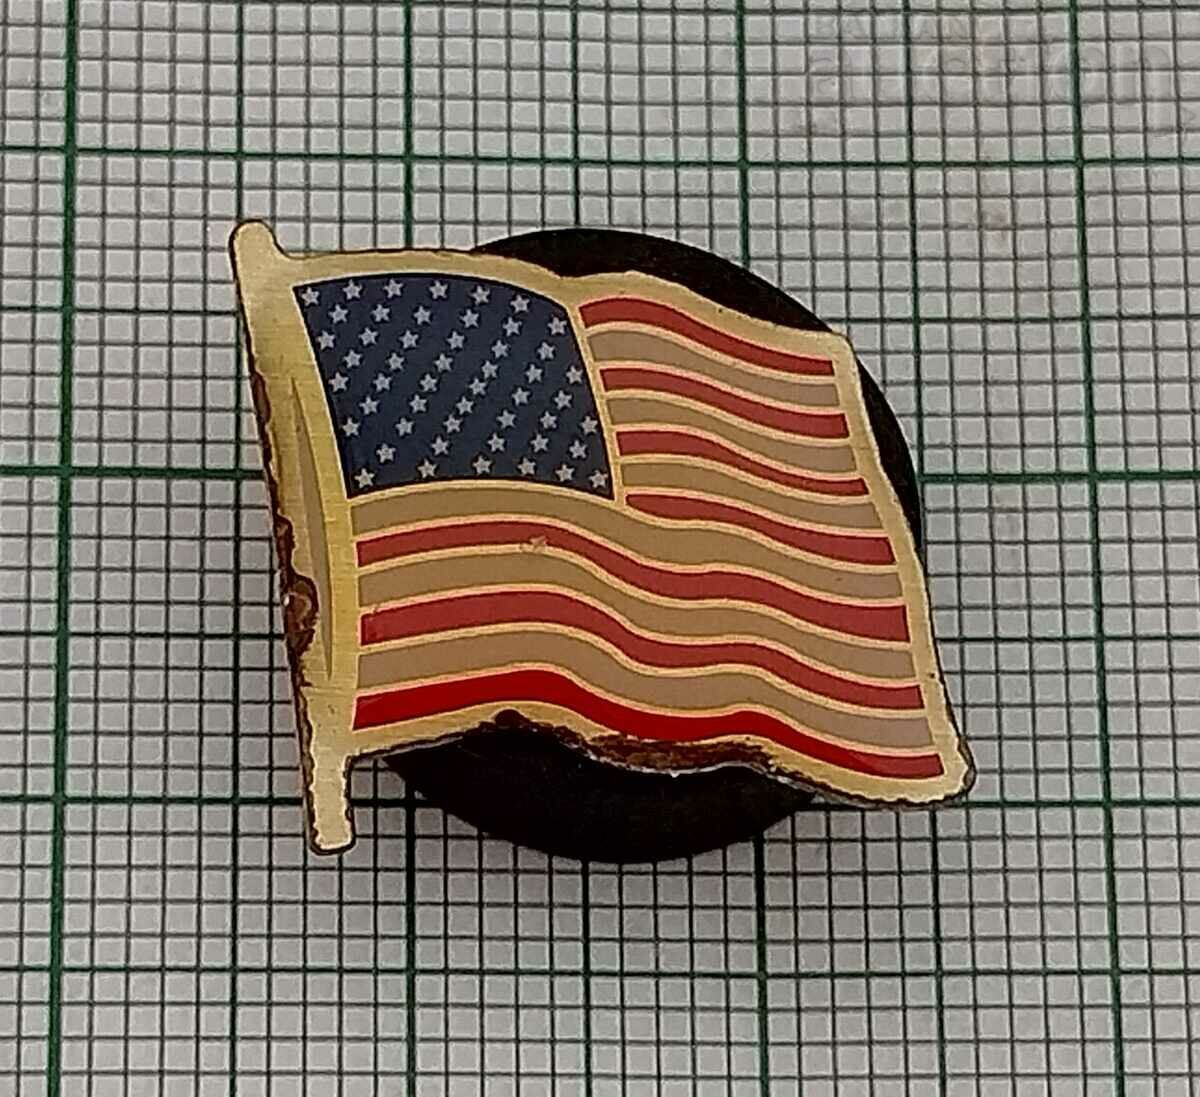 USA NATIONAL FLAG BADGE PIN